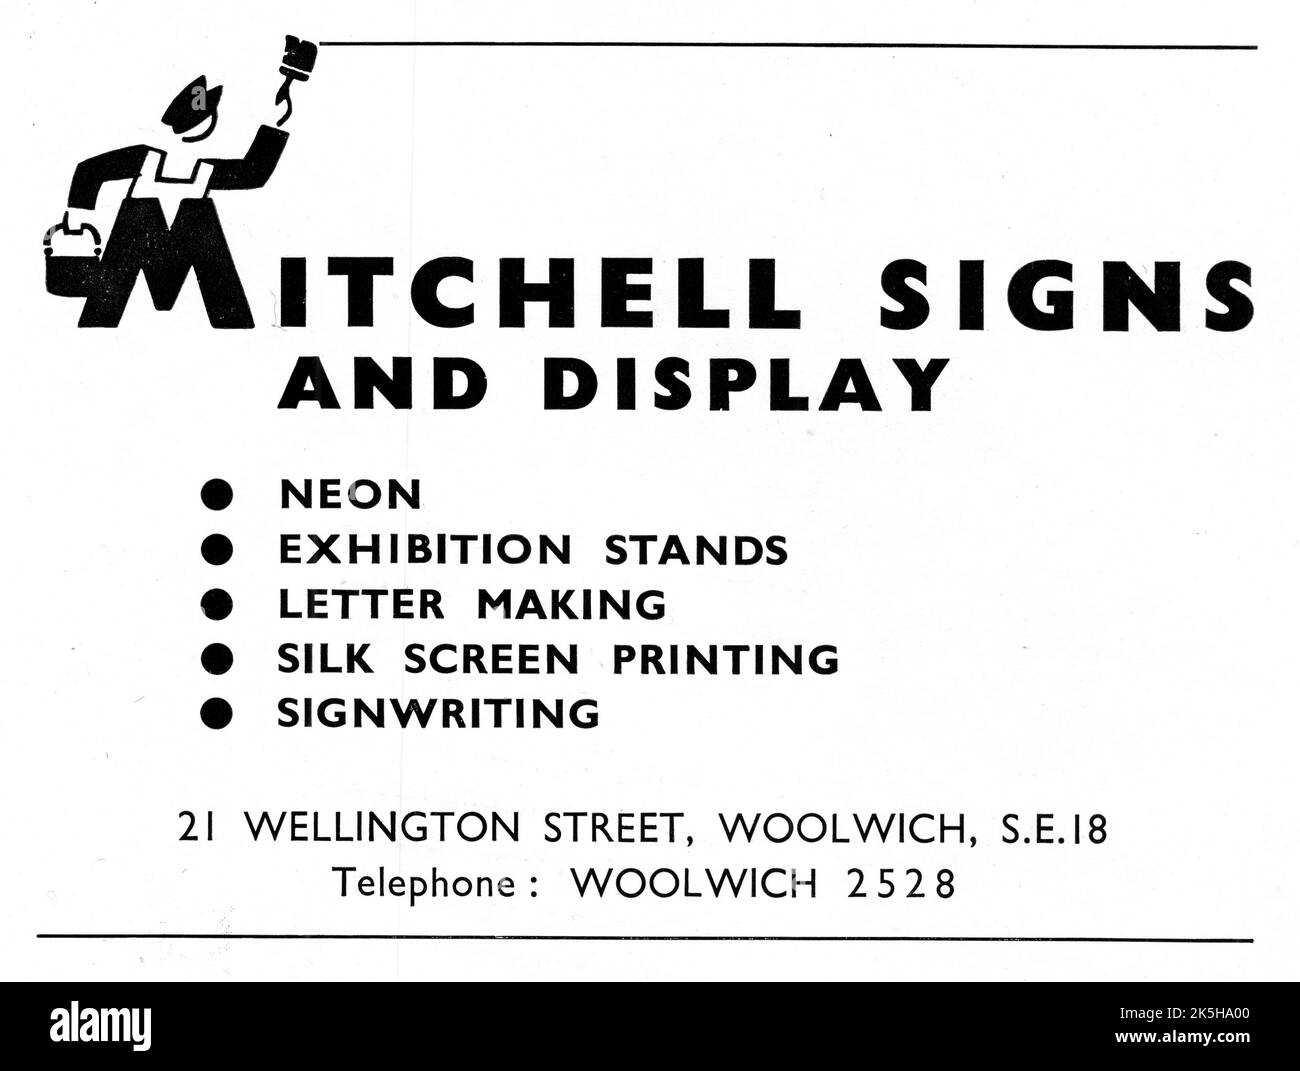 Un annuncio del 1951 per ‘Mitchell Signs and Display’ di 21 Wellington Street, Woolwich, London S.E.18. L'azienda è specializzata in insegne al neon, stand espositivi, lettere, serigrafia e segnaletica. Foto Stock